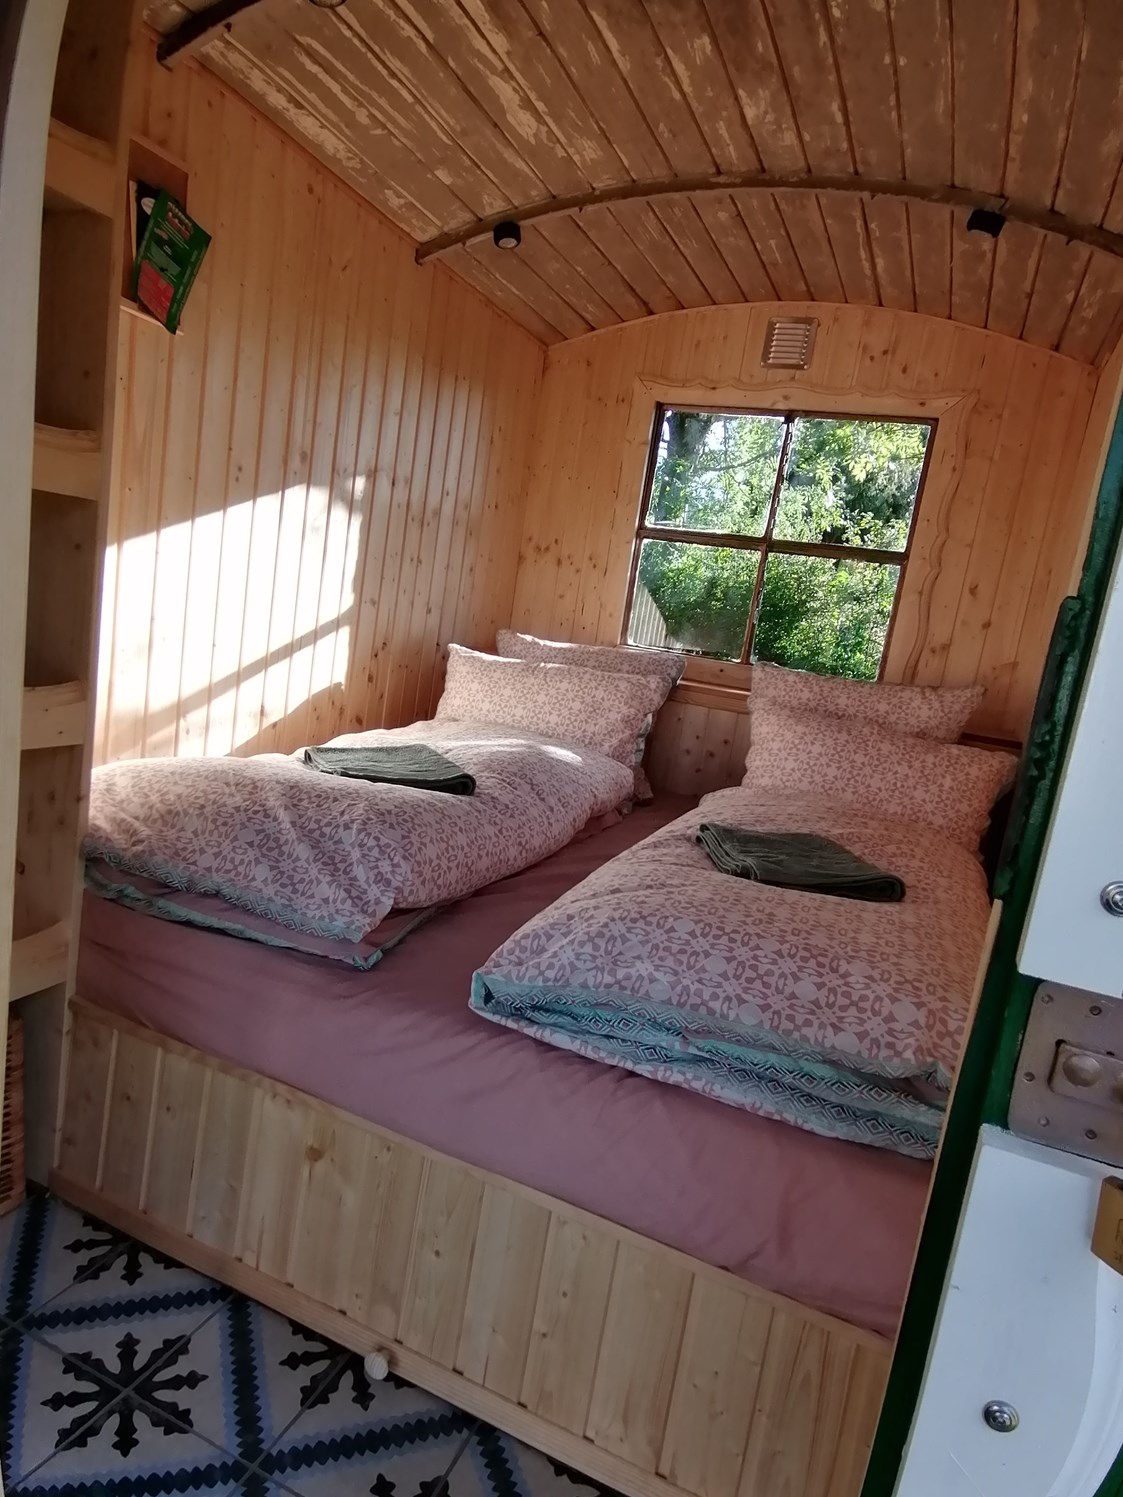 Glampingunterkunft: Kohlmeischen, Bett:160x180 cm - Ecolodge Hinterland Bauwagen Lodge